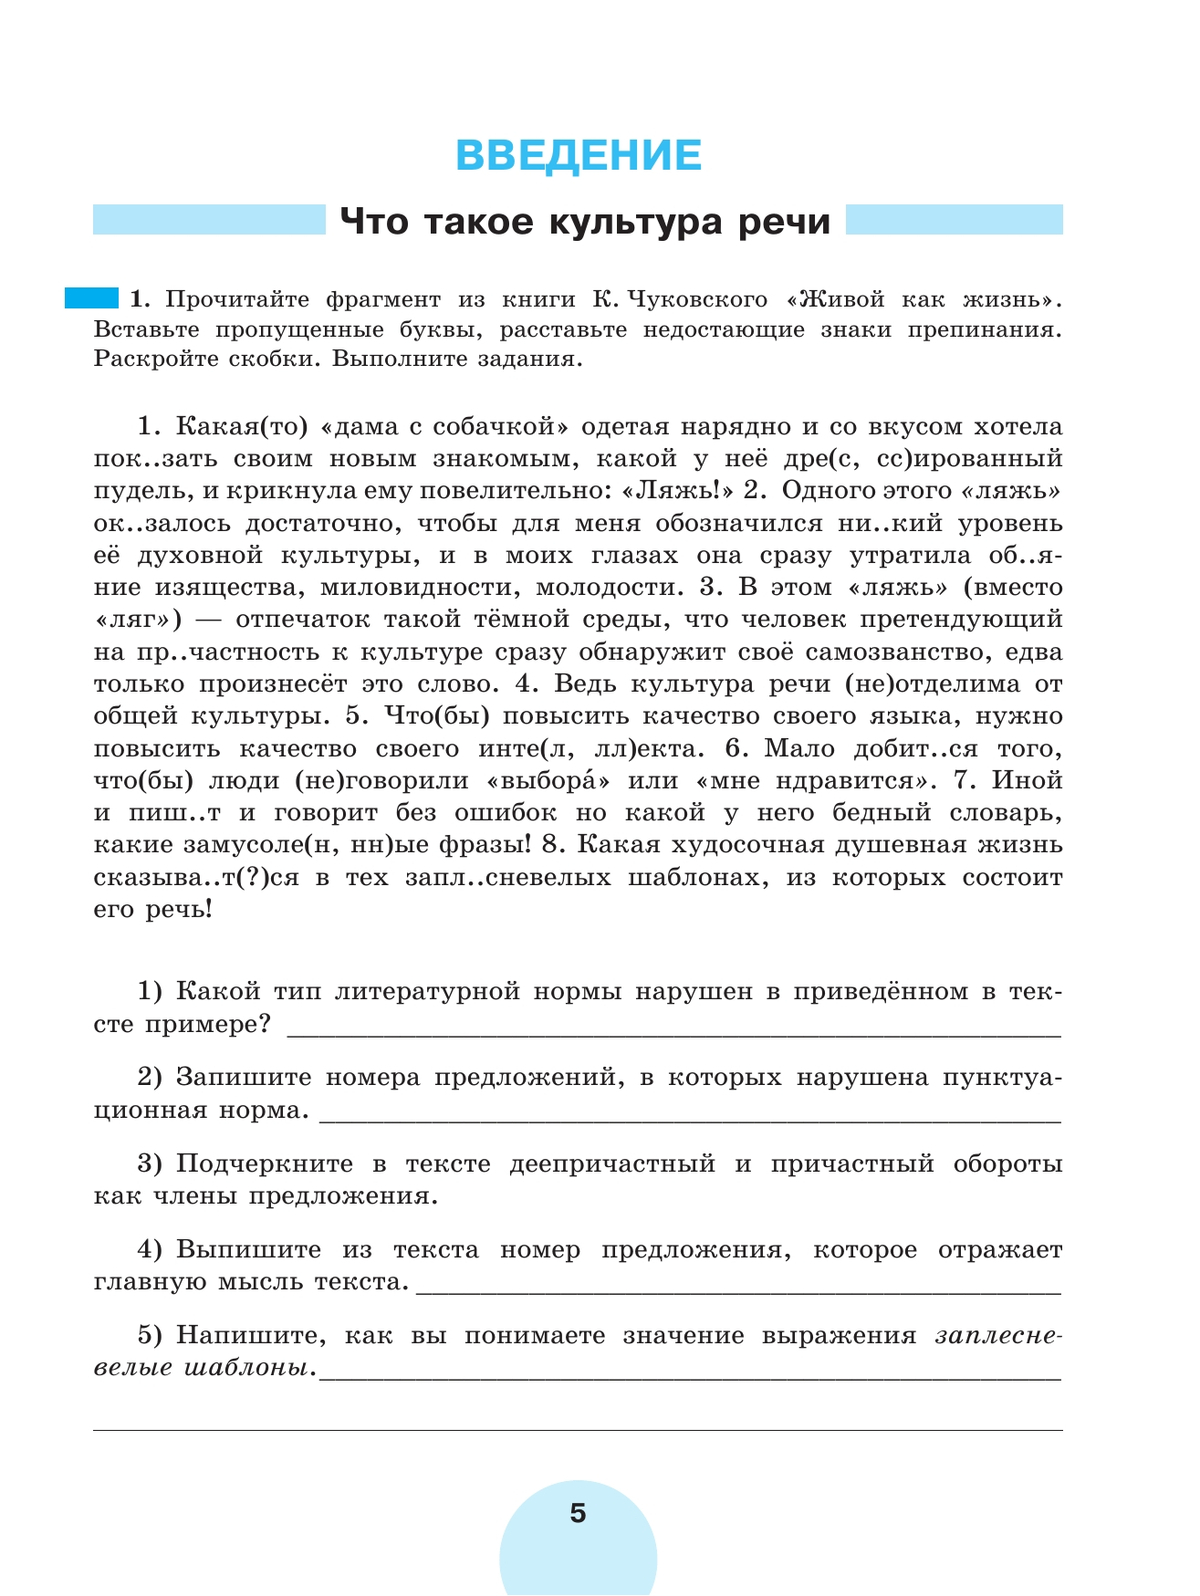 Русский язык. Рабочая тетрадь. 8 класс. В 2 ч. Часть 1 5